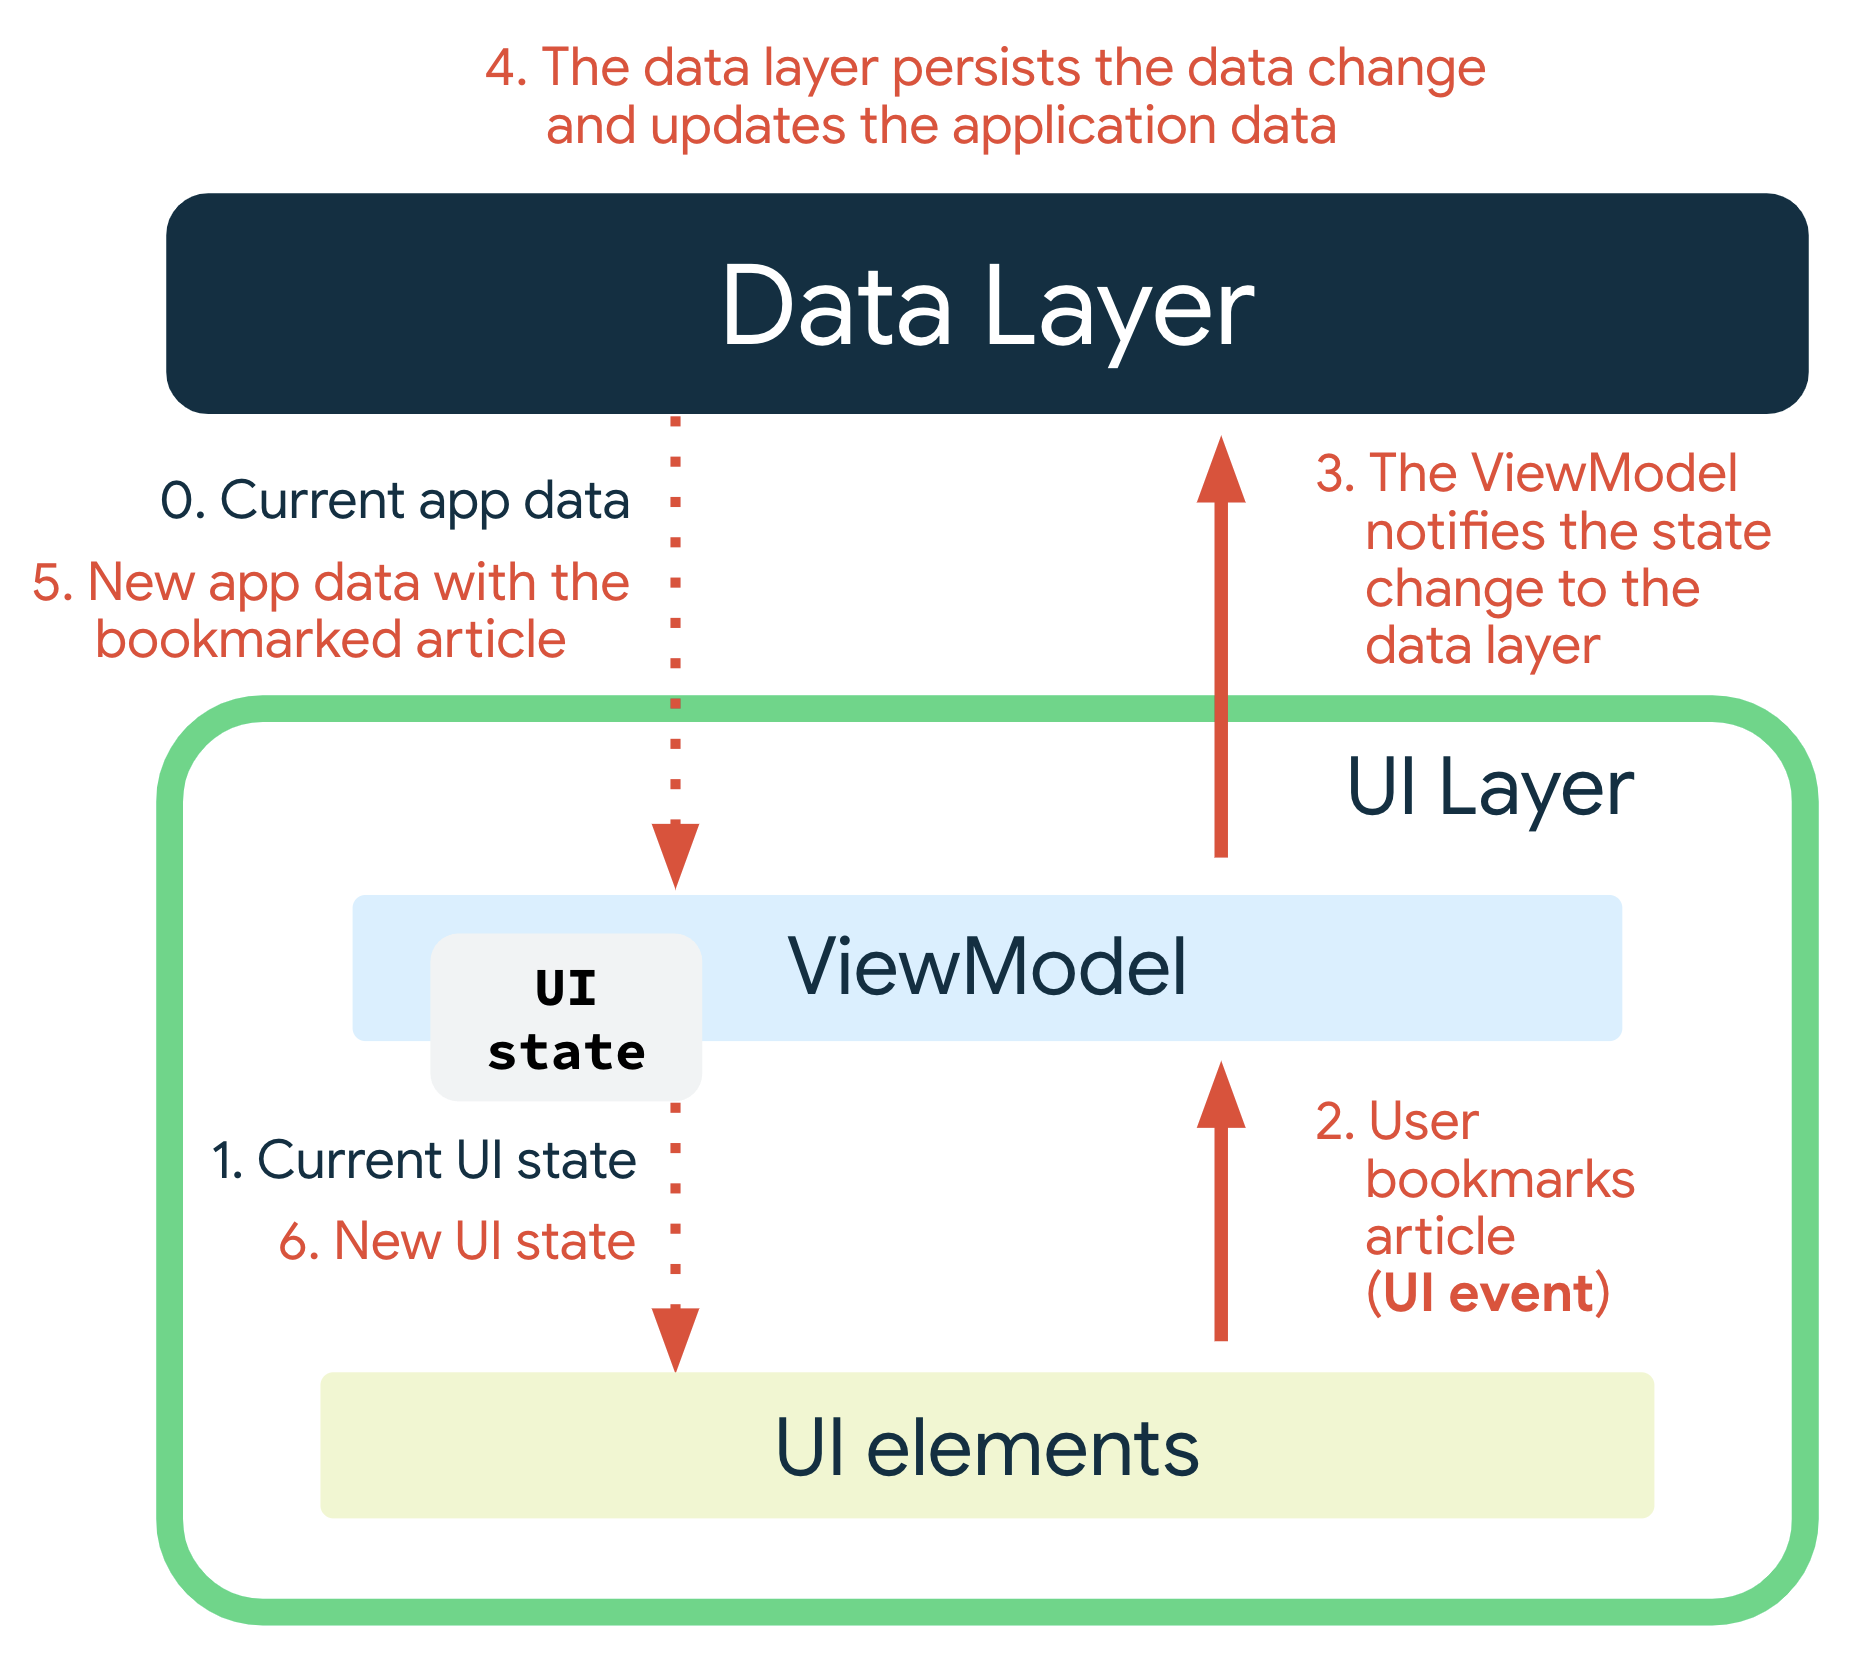 Kullanıcı bir eklere yer işareti koyduğunda bir kullanıcı arayüzü etkinliği oluşur. ViewModel, veri katmanına durum değişikliğini bildirir. Veri katmanı, veri değişimine devam eder ve uygulama verilerini günceller. Yer işareti eklenmiş makaleyi içeren yeni uygulama verileri ViewModel&#39;e iletilir. ViewModel, yeni kullanıcı arayüzü durumunu üretir ve görüntülenmek üzere kullanıcı arayüzü öğelerine iletir.